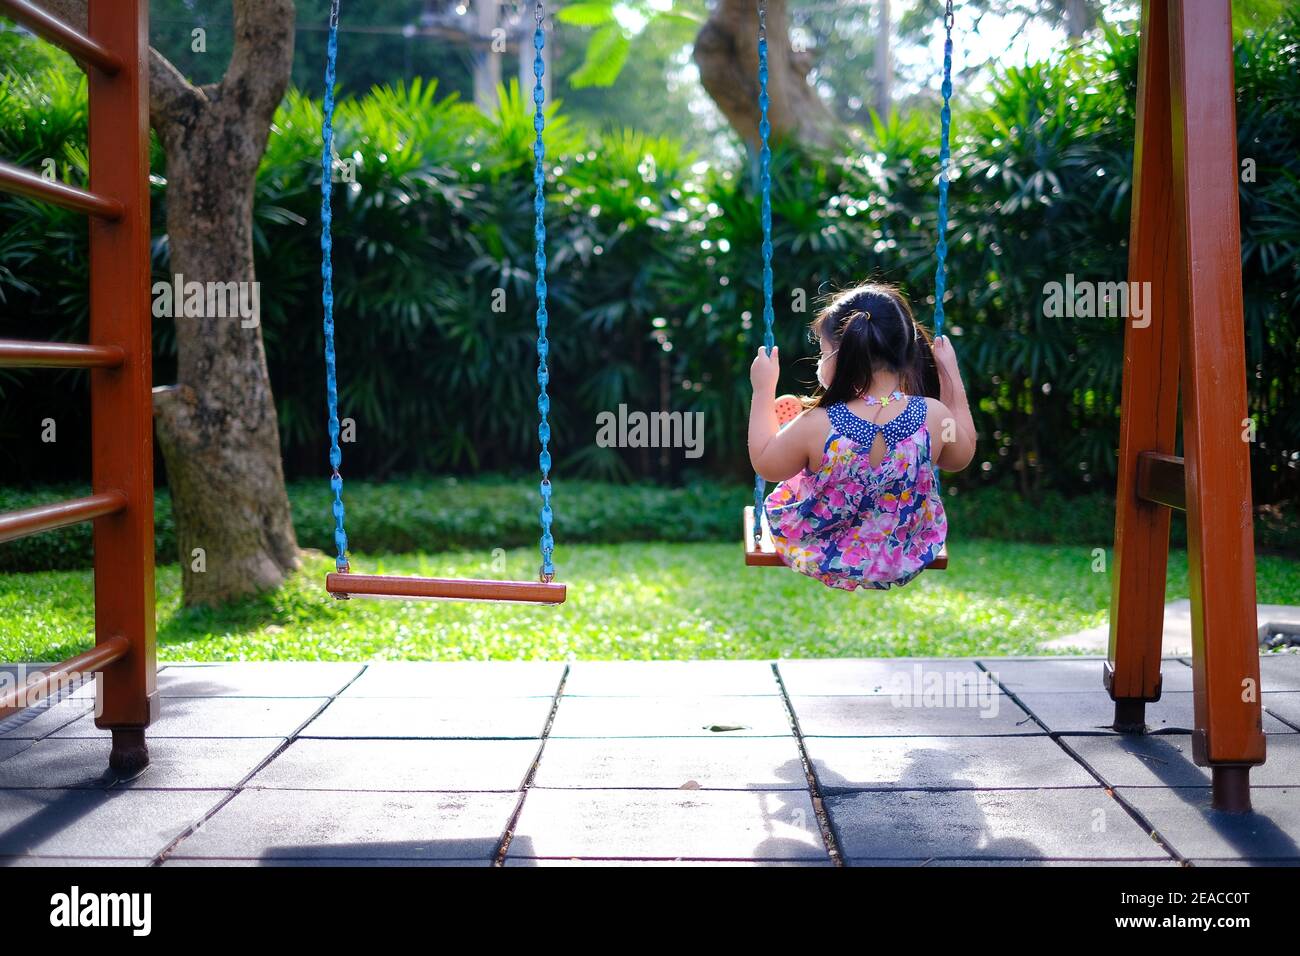 La vue arrière d'une jeune fille asiatique solitaire jouant sur une balançoire par elle-même dans une aire de jeux vide par une journée ensoleillée. Banque D'Images